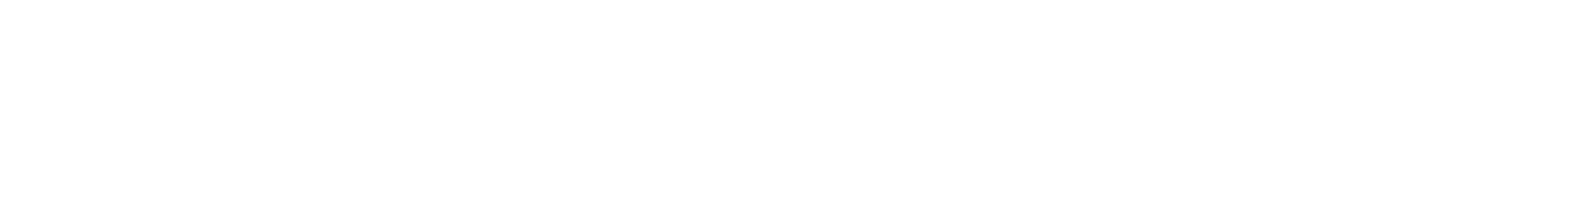 cc white logo